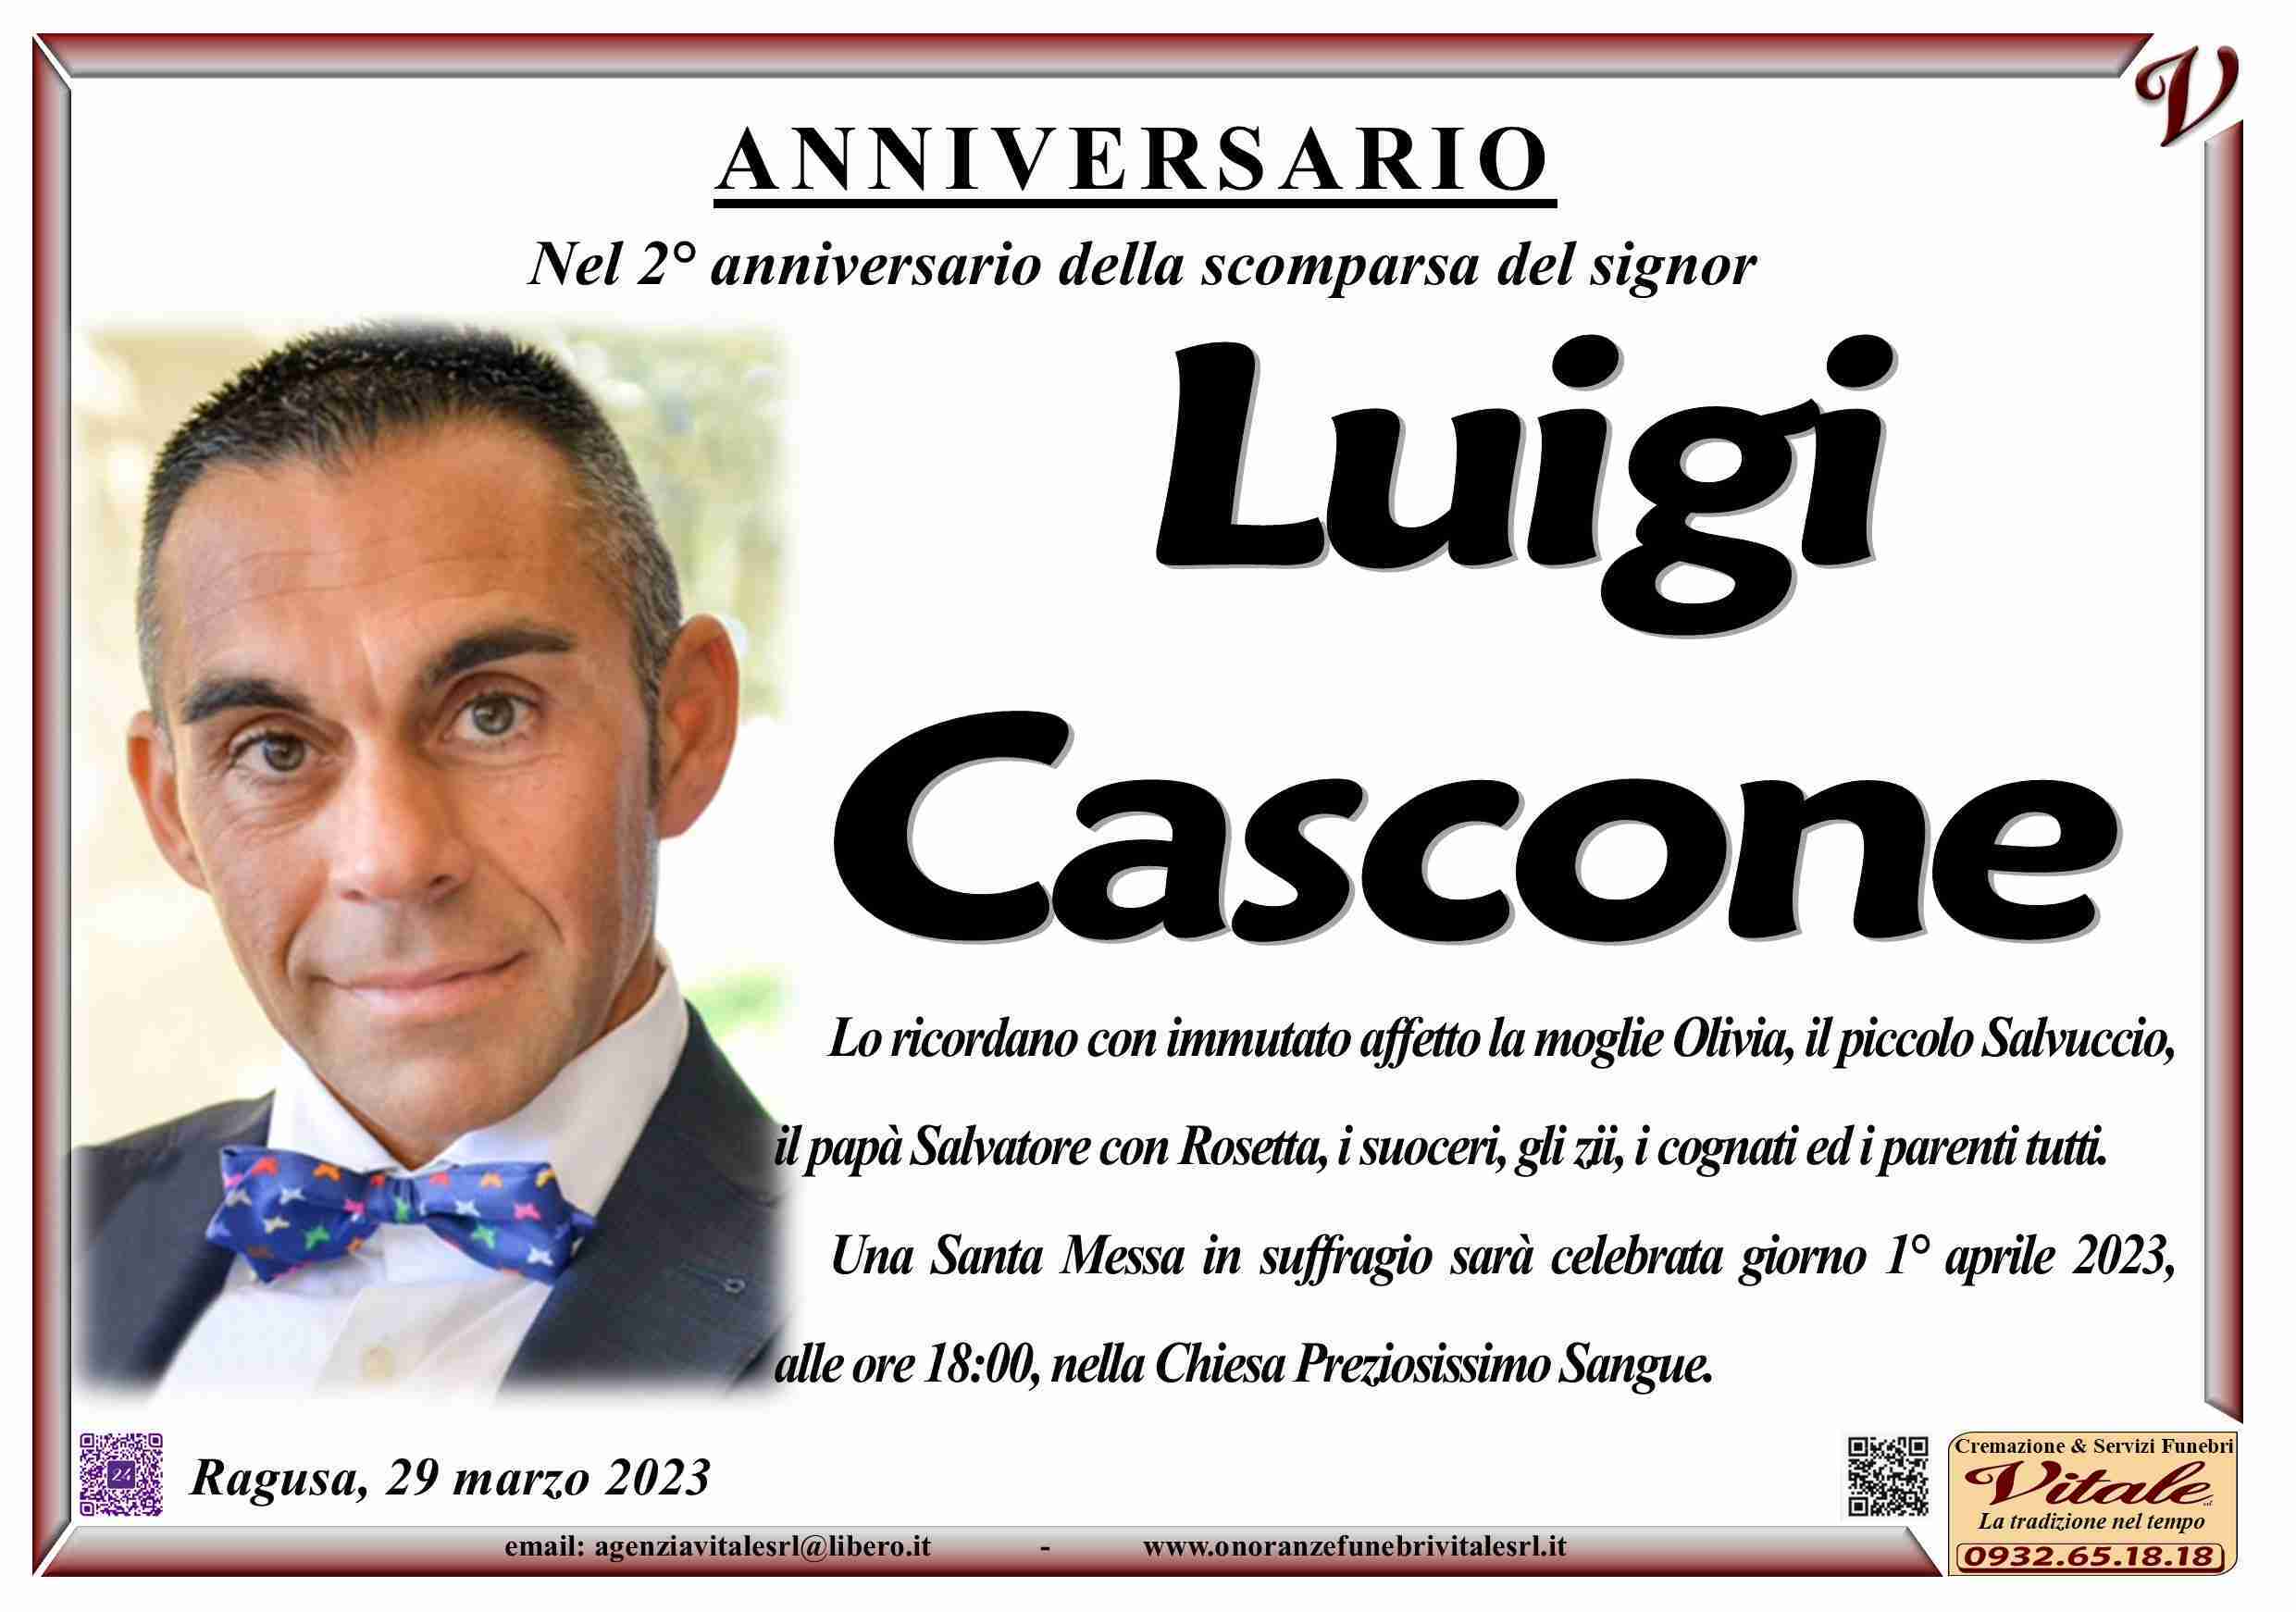 Luigi Cascone